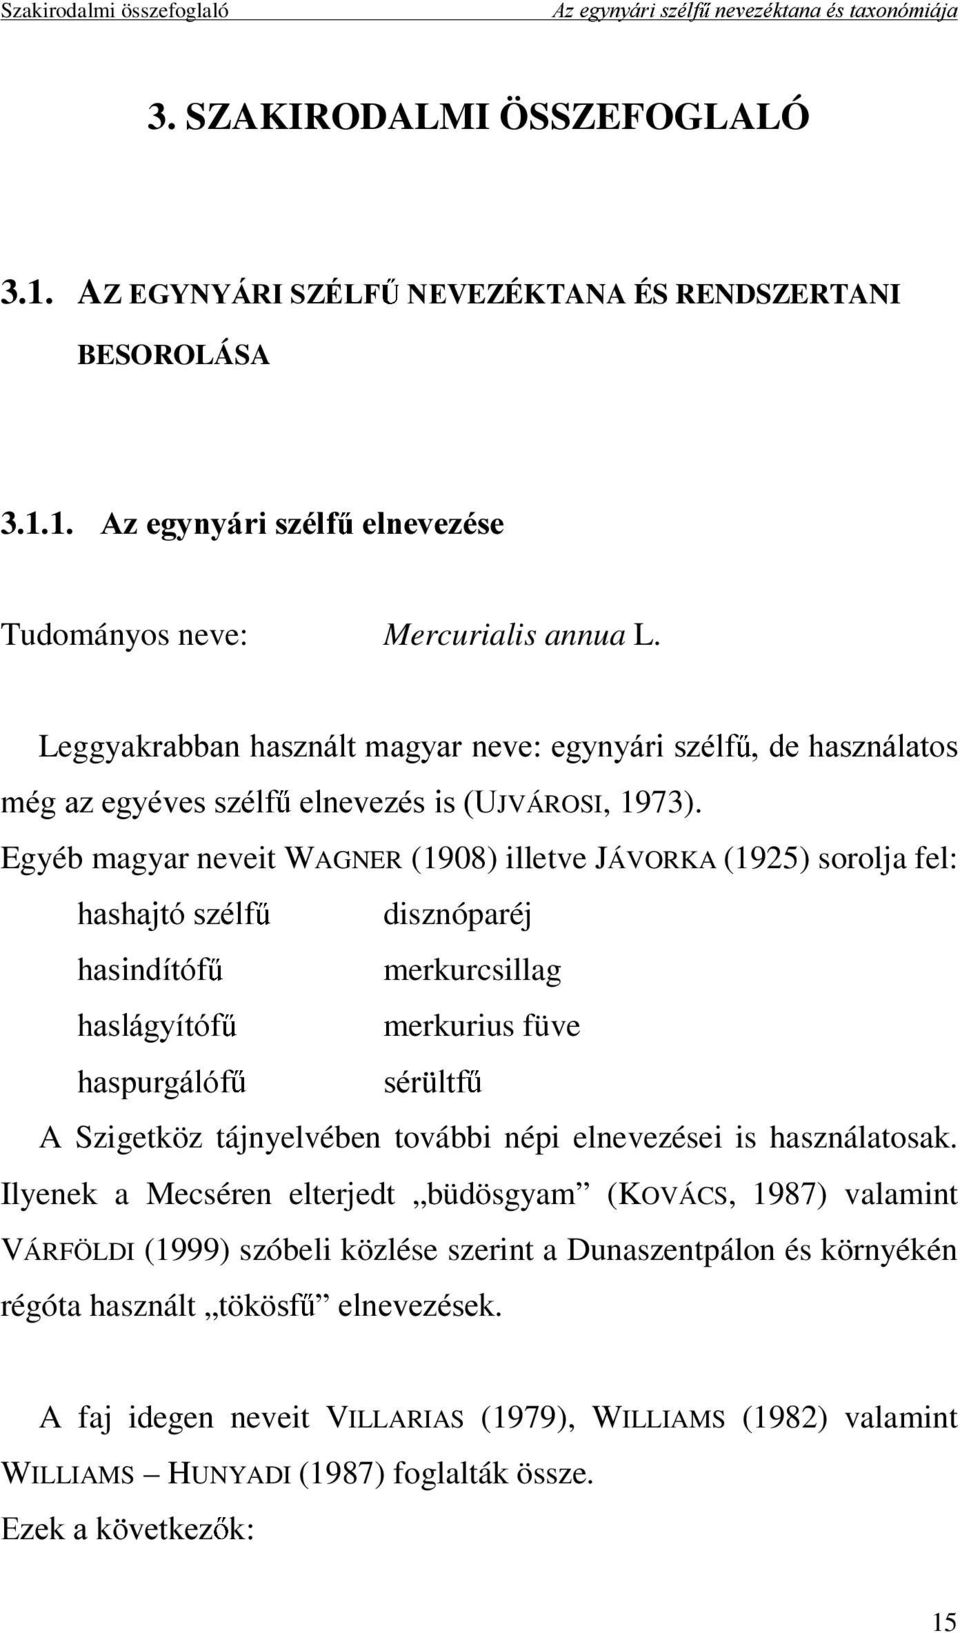 Egyéb magyar neveit WAGNER (1908) illetve JÁVORKA (1925) sorolja fel: KDVKDMWyV]pOI disznóparéj KDVLQGtWyI merkurcsillag KDVOiJ\tWyI merkurius füve KDVSXUJiOyI VpU OWI A Szigetköz tájnyelvében